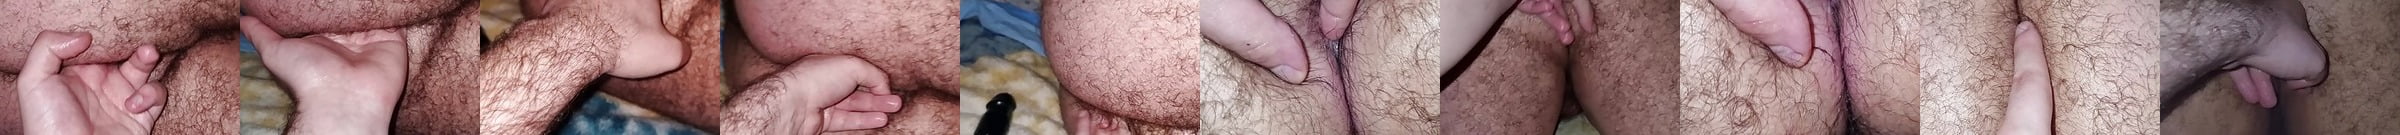 Featured Ass Massage Gay Porn Videos 3 Xhamster